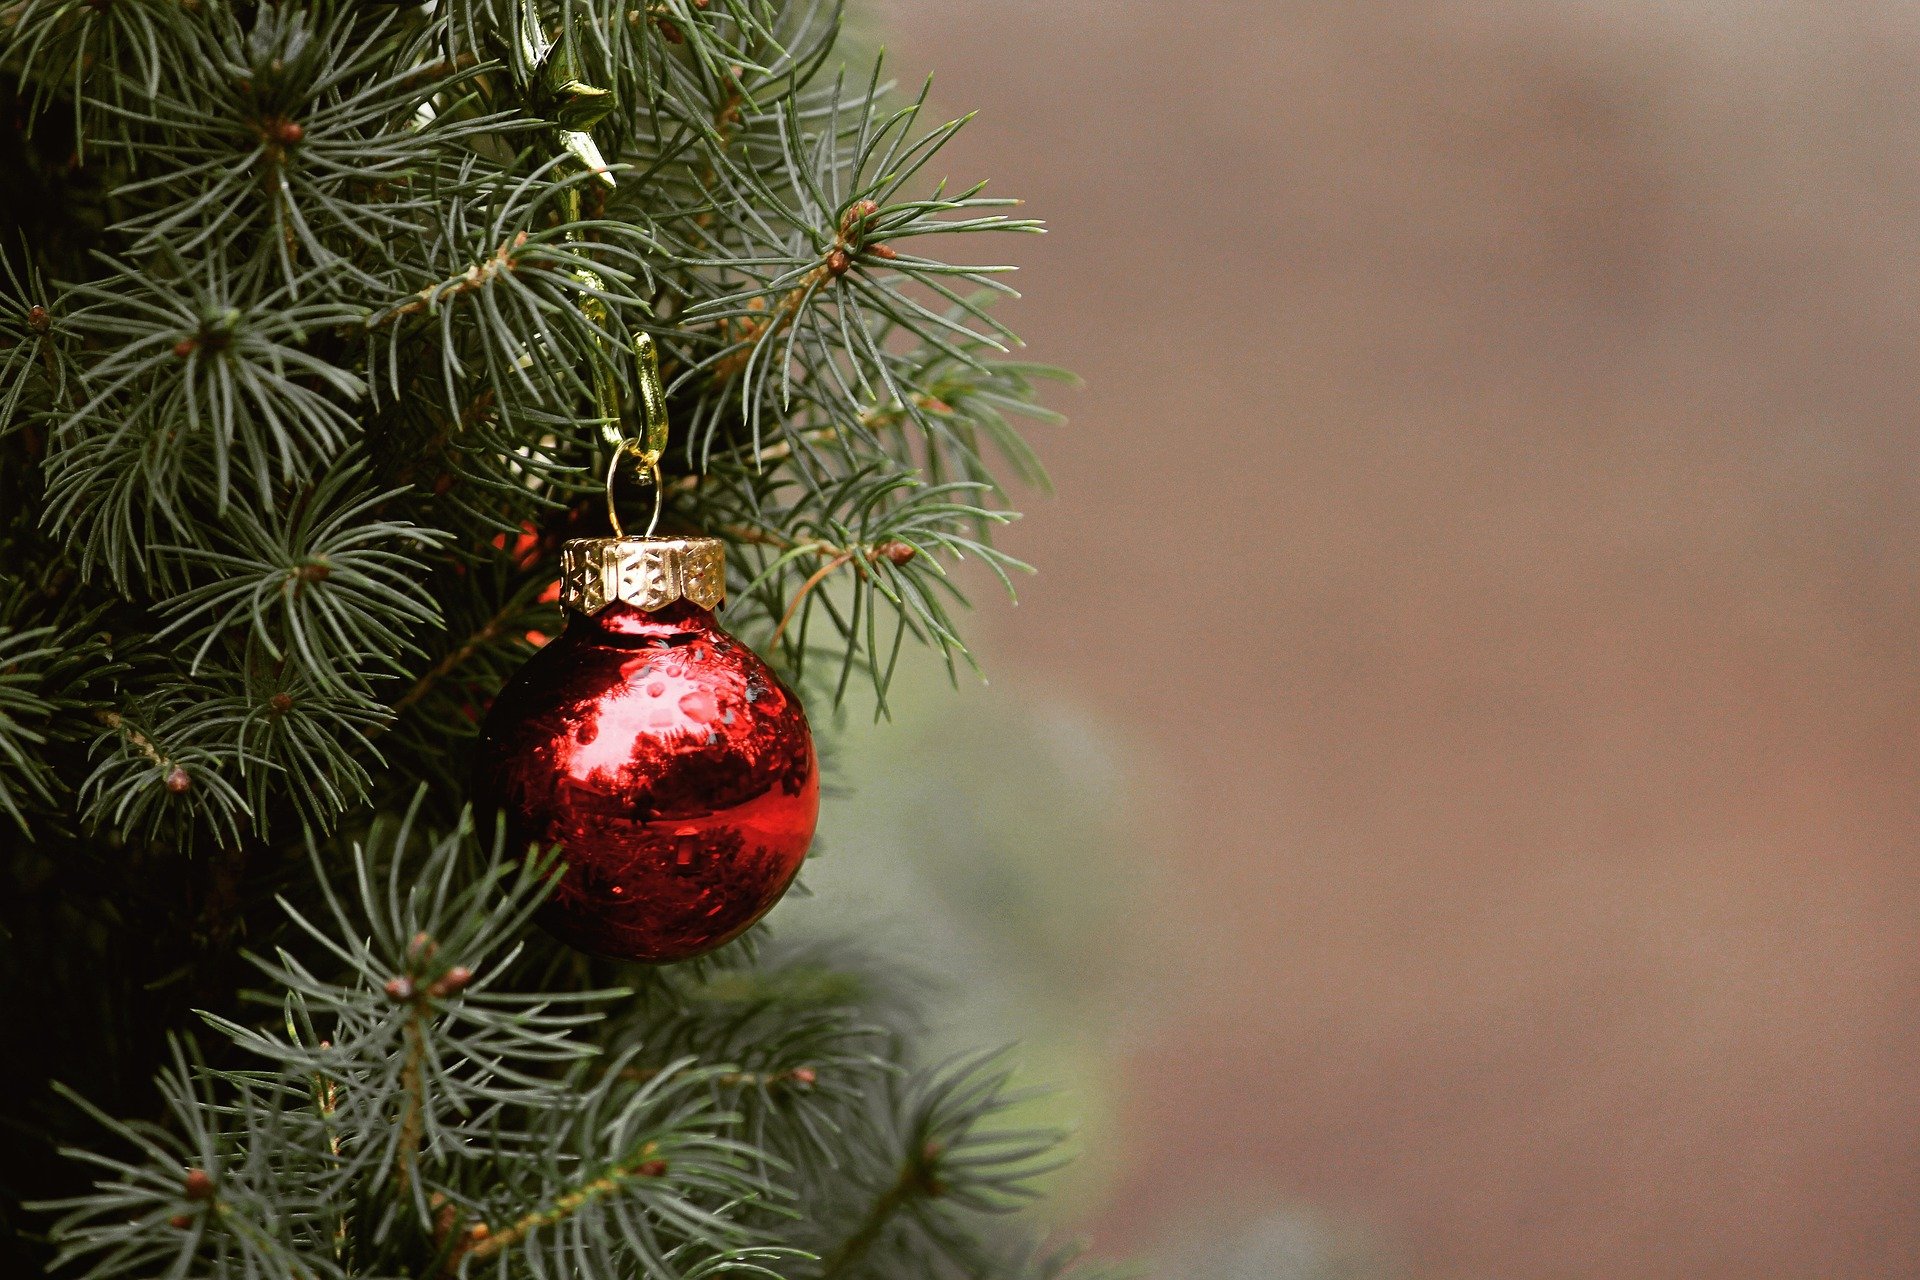 À quoi servent les décorations de Noël ?